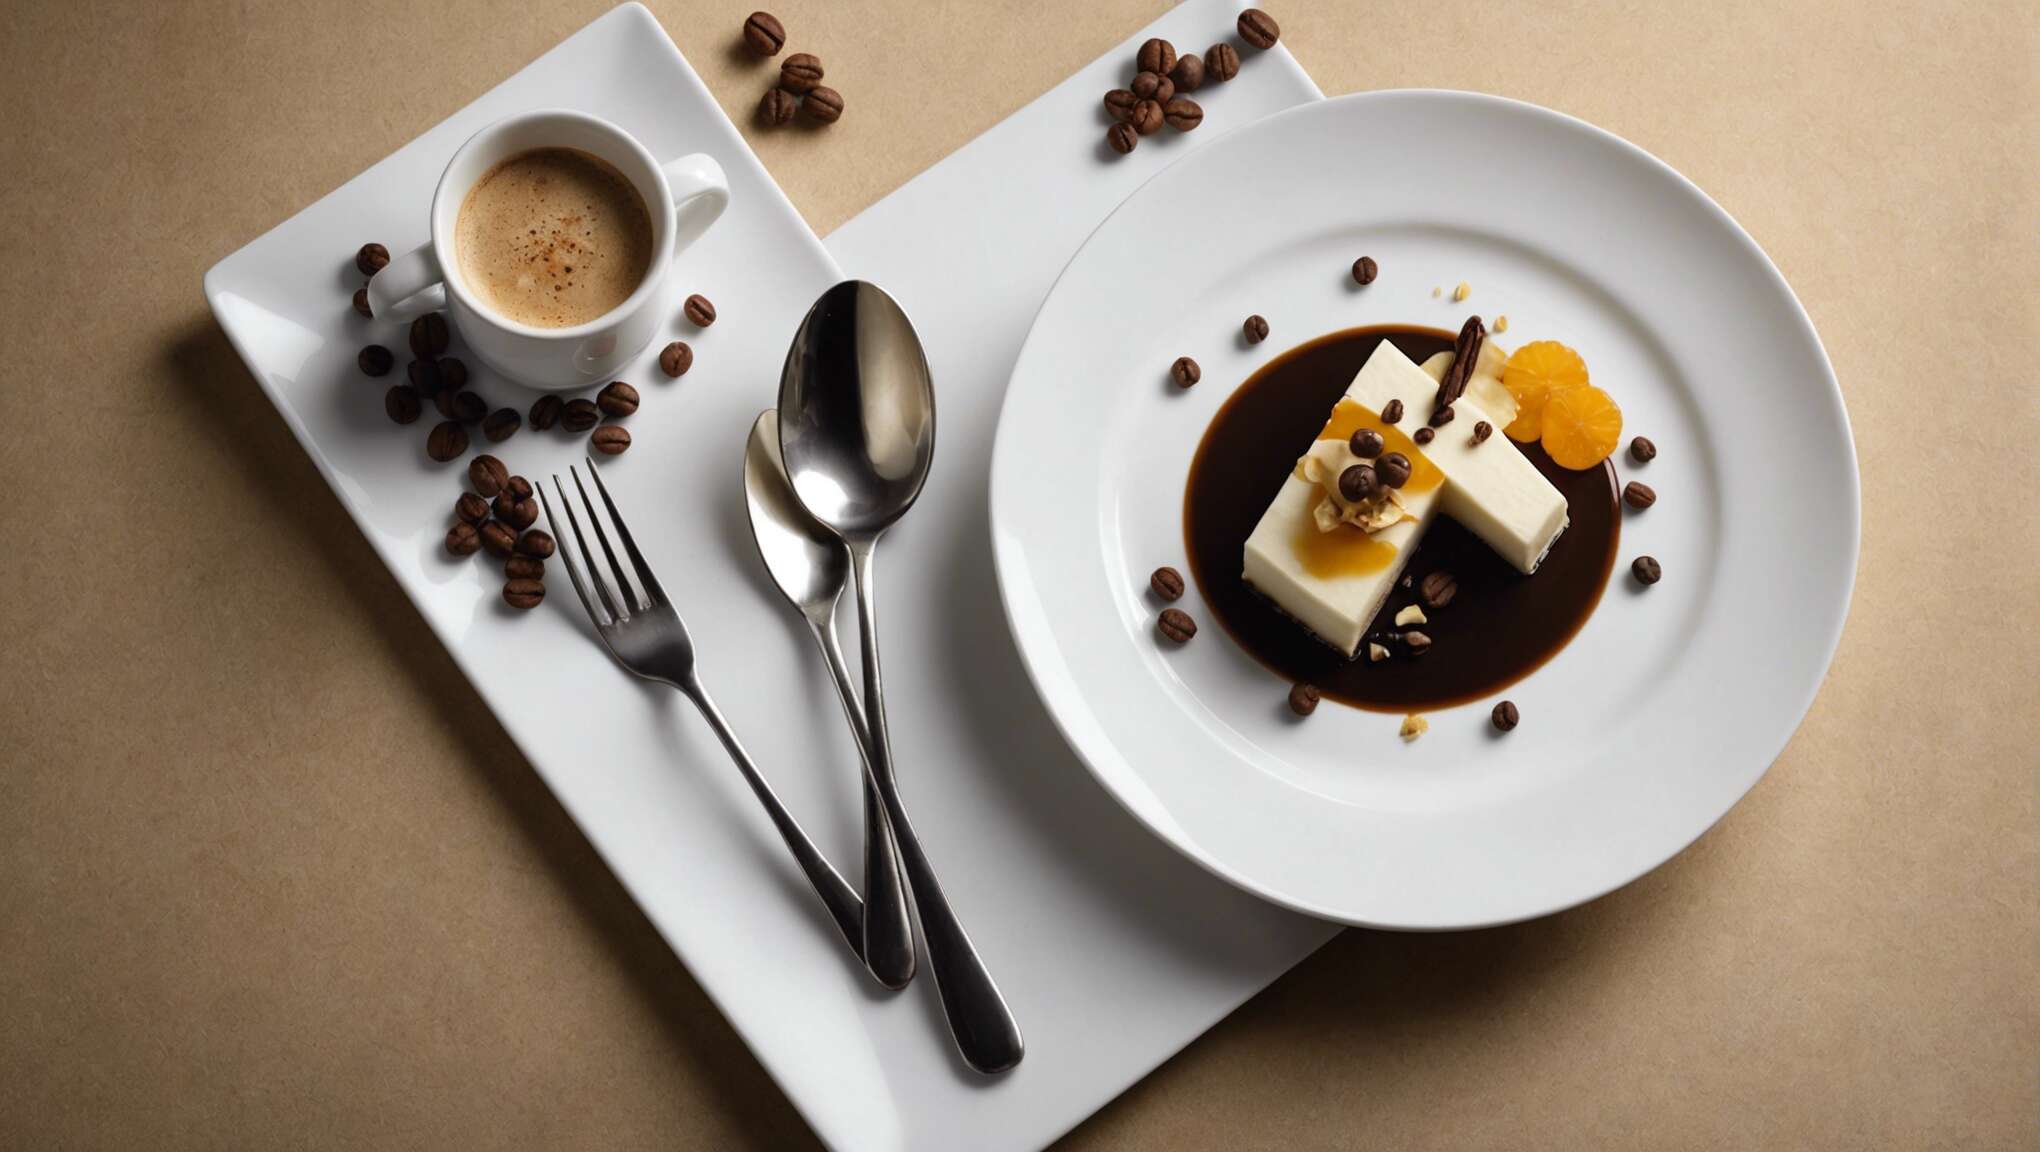 Cuisine créative : des associations surprenantes avec le café vanille